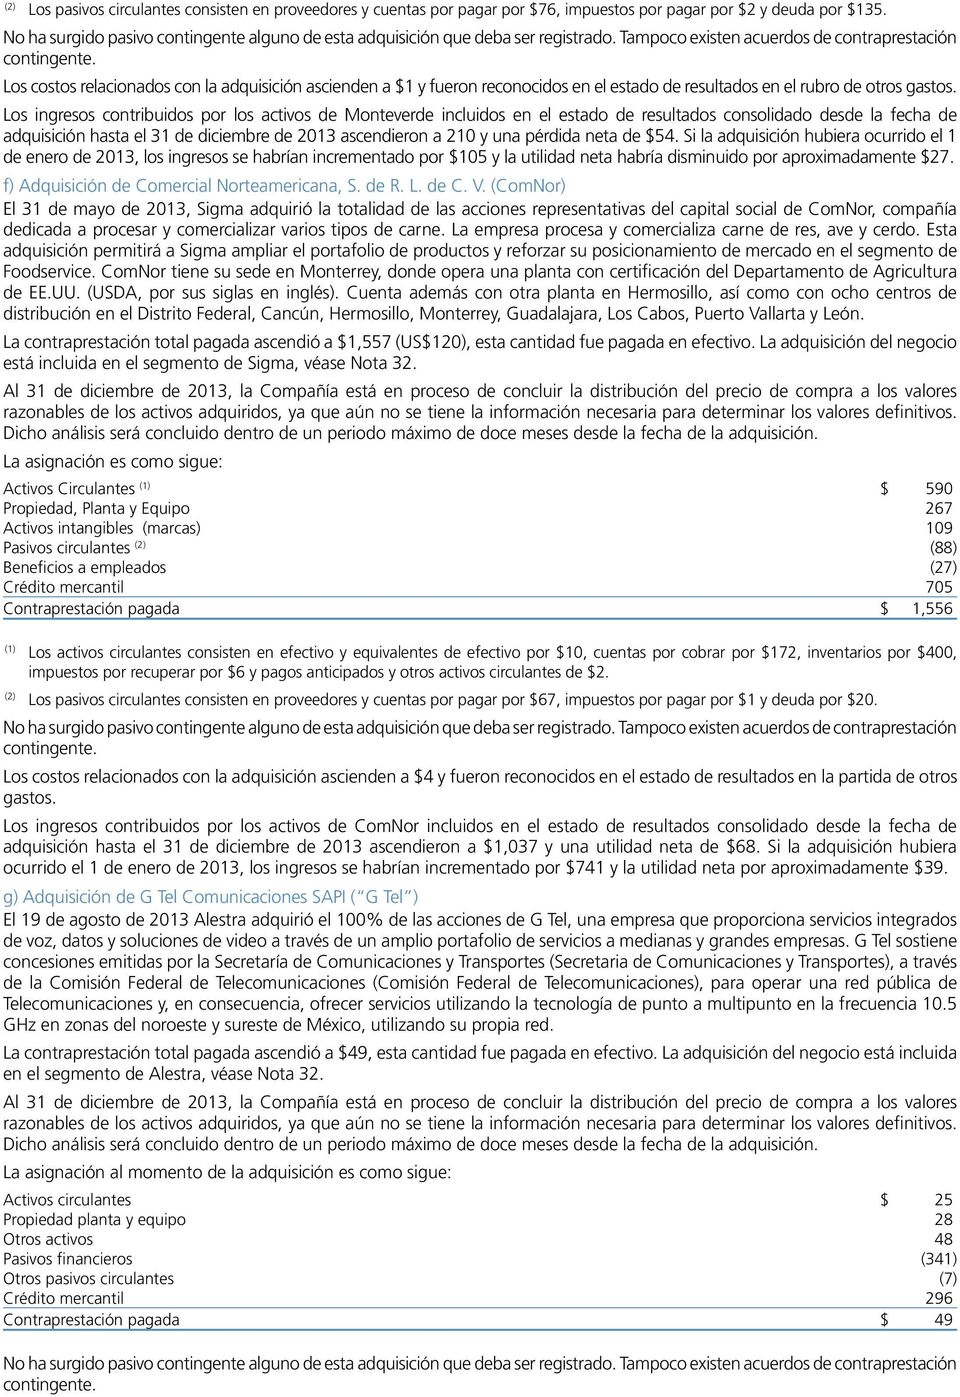 Los ingresos contribuidos por los activos de Monteverde incluidos en el estado de resultados consolidado desde la fecha de adquisición hasta el 31 de diciembre de 2013 ascendieron a 210 y una pérdida